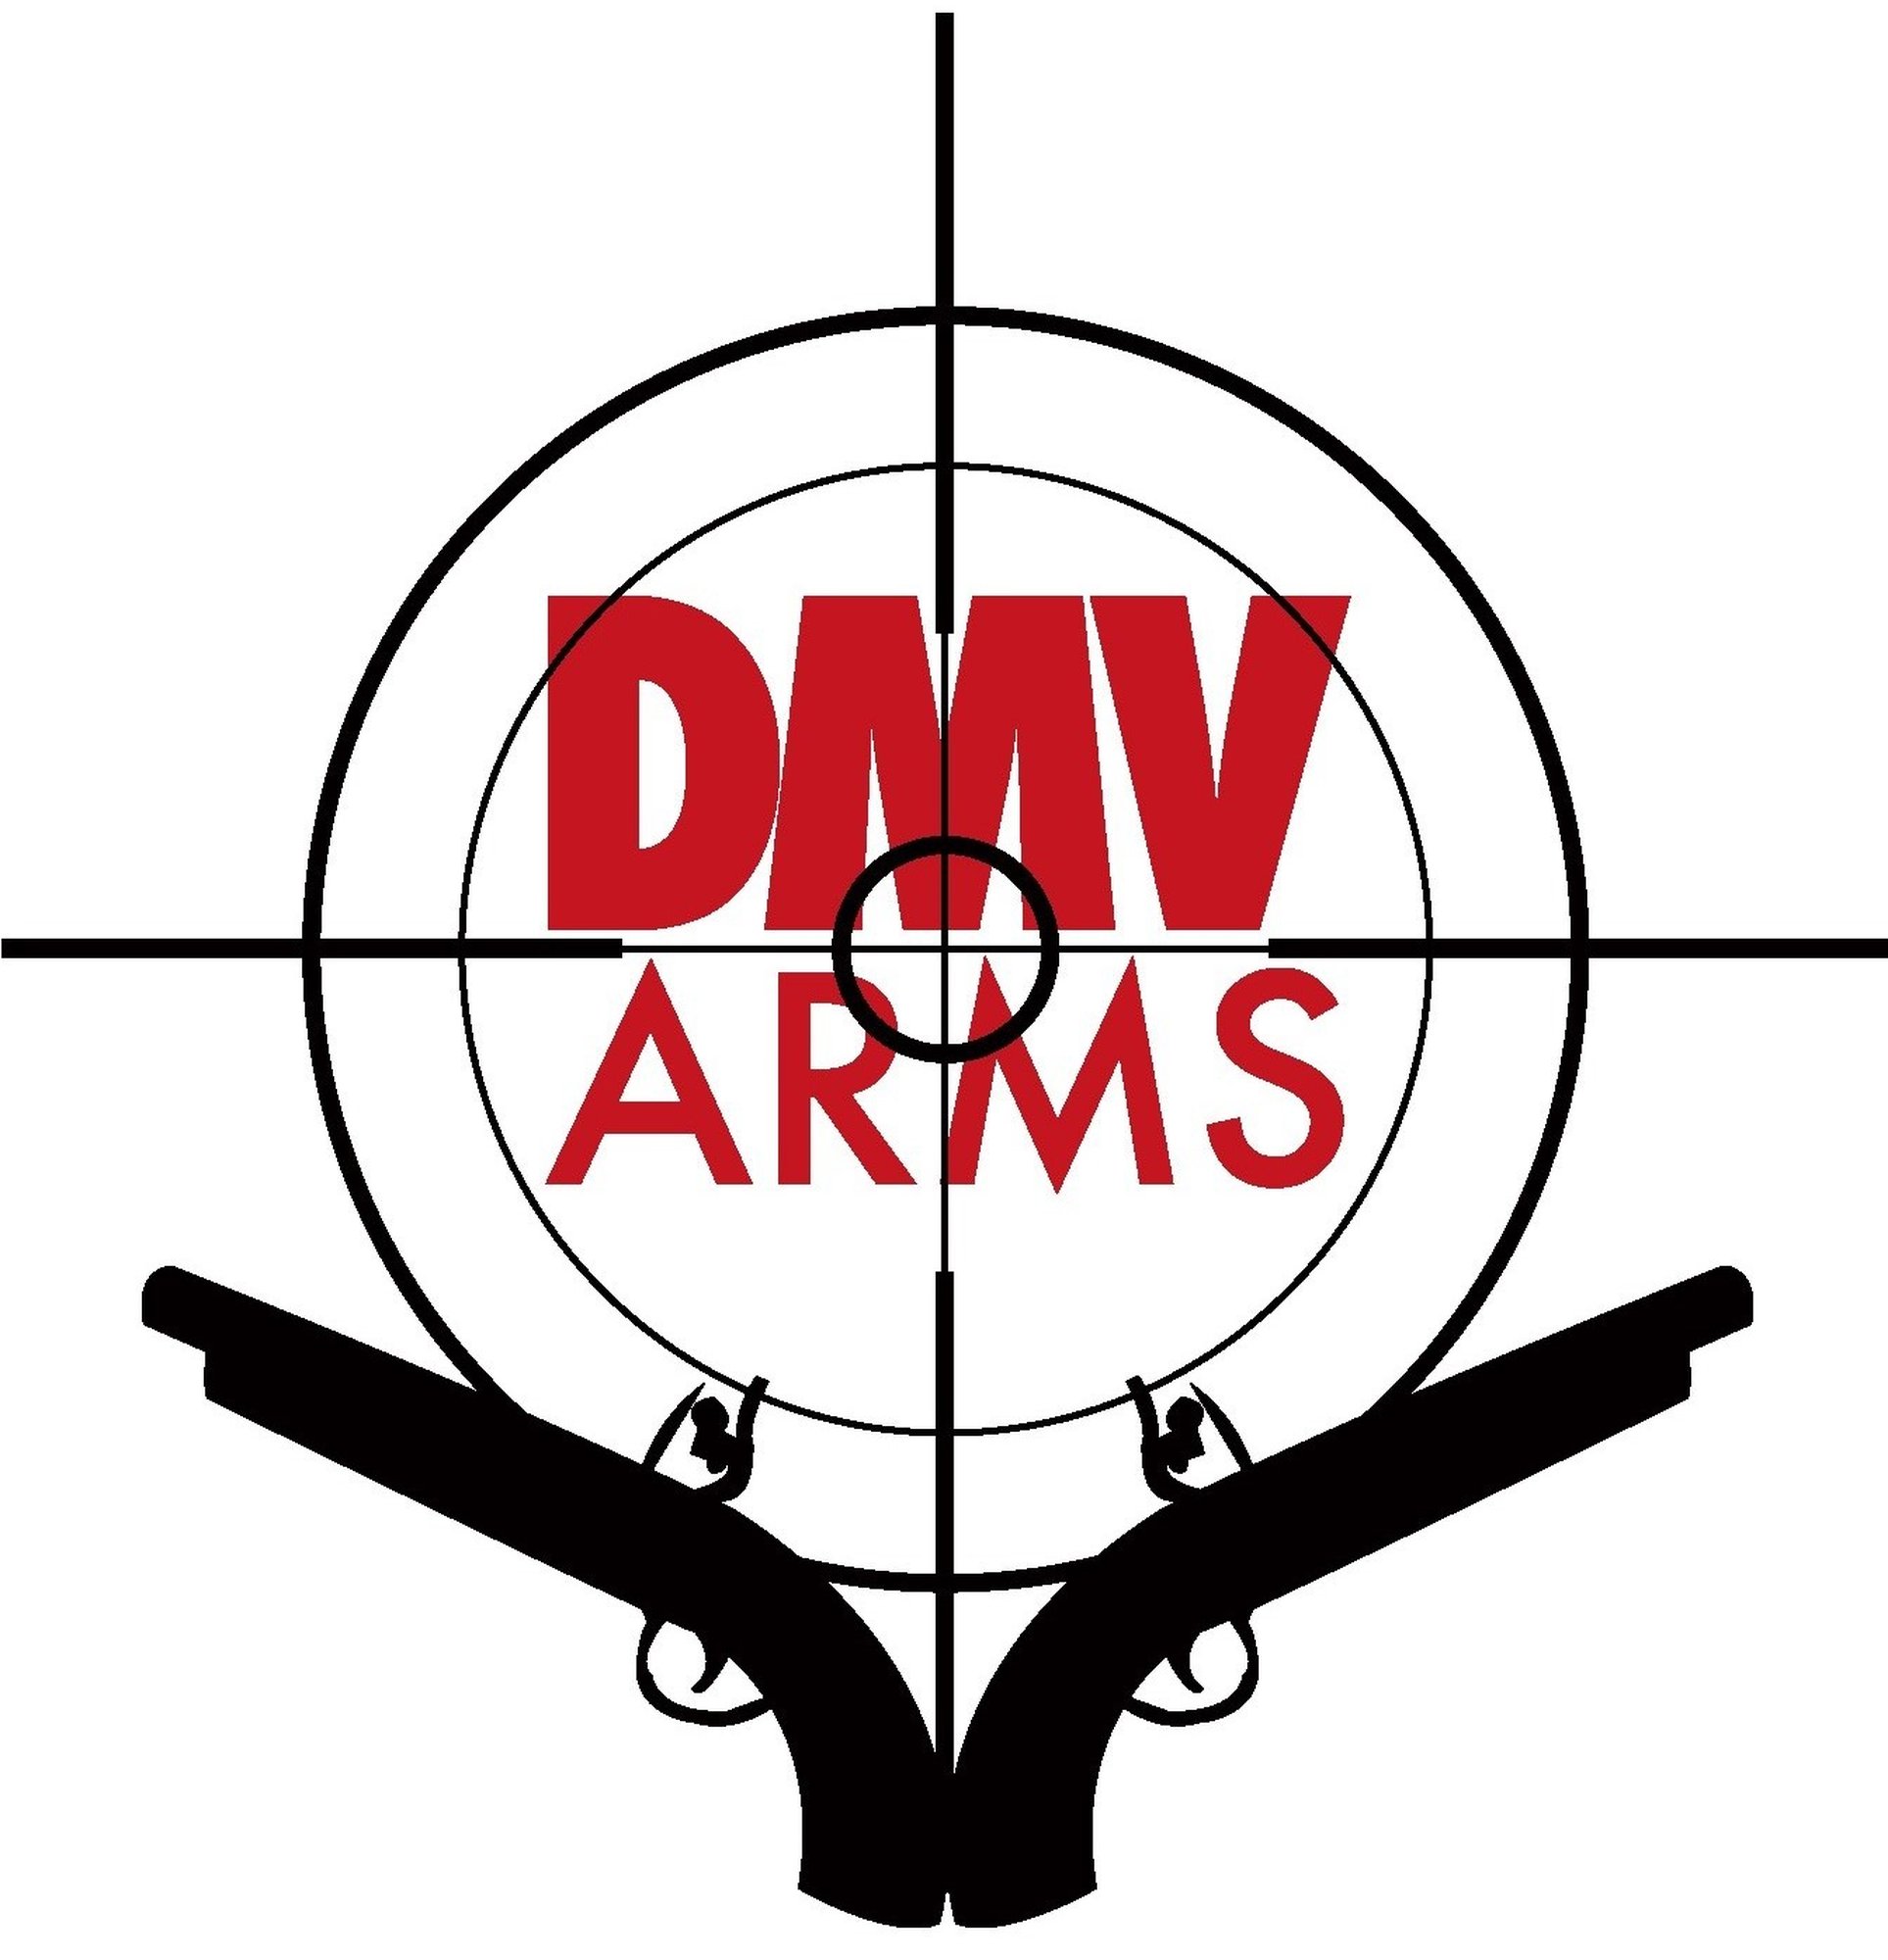 Dmv Arms